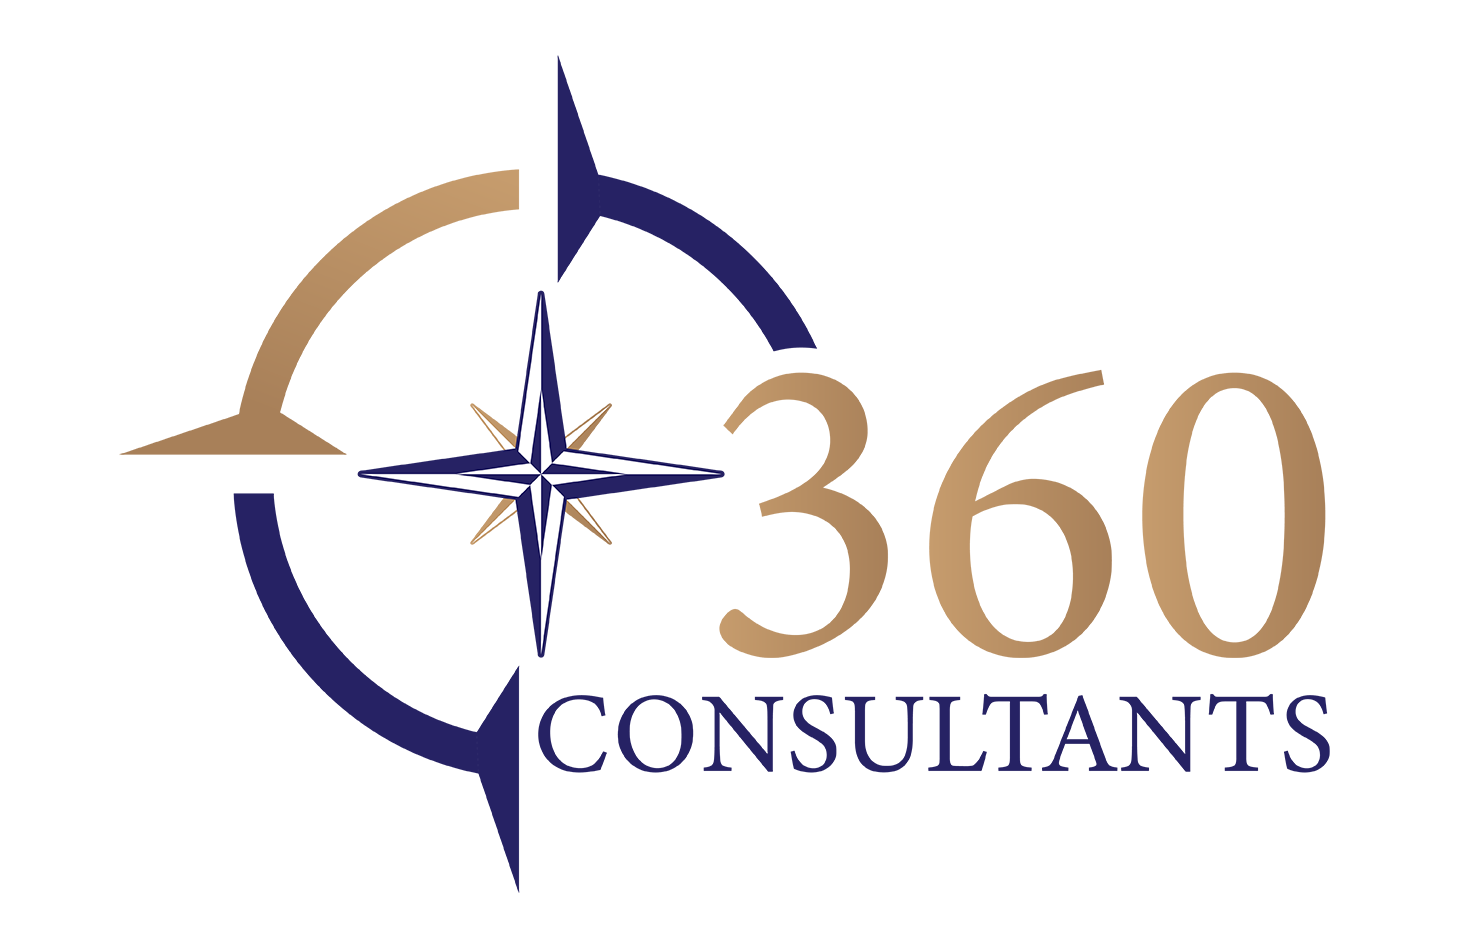 360 consultants new logo